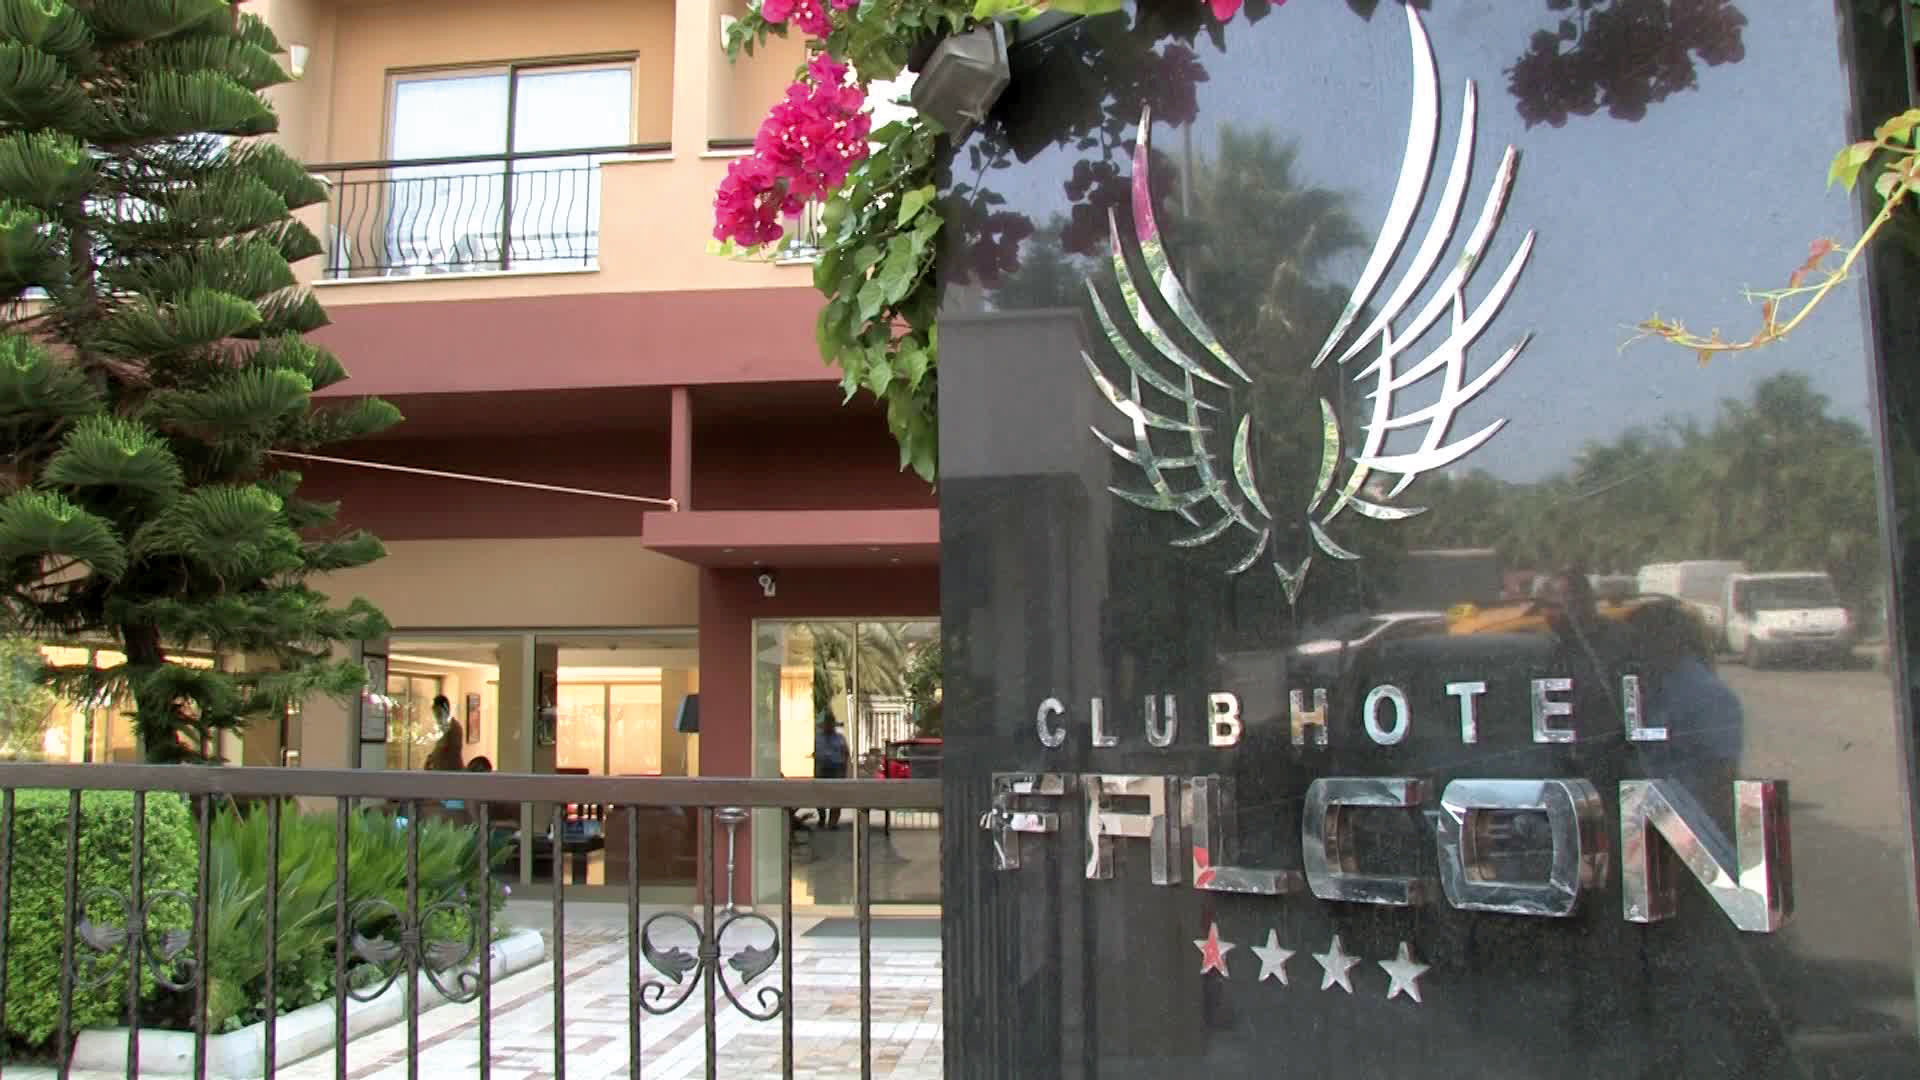 Club Hotel Falcon